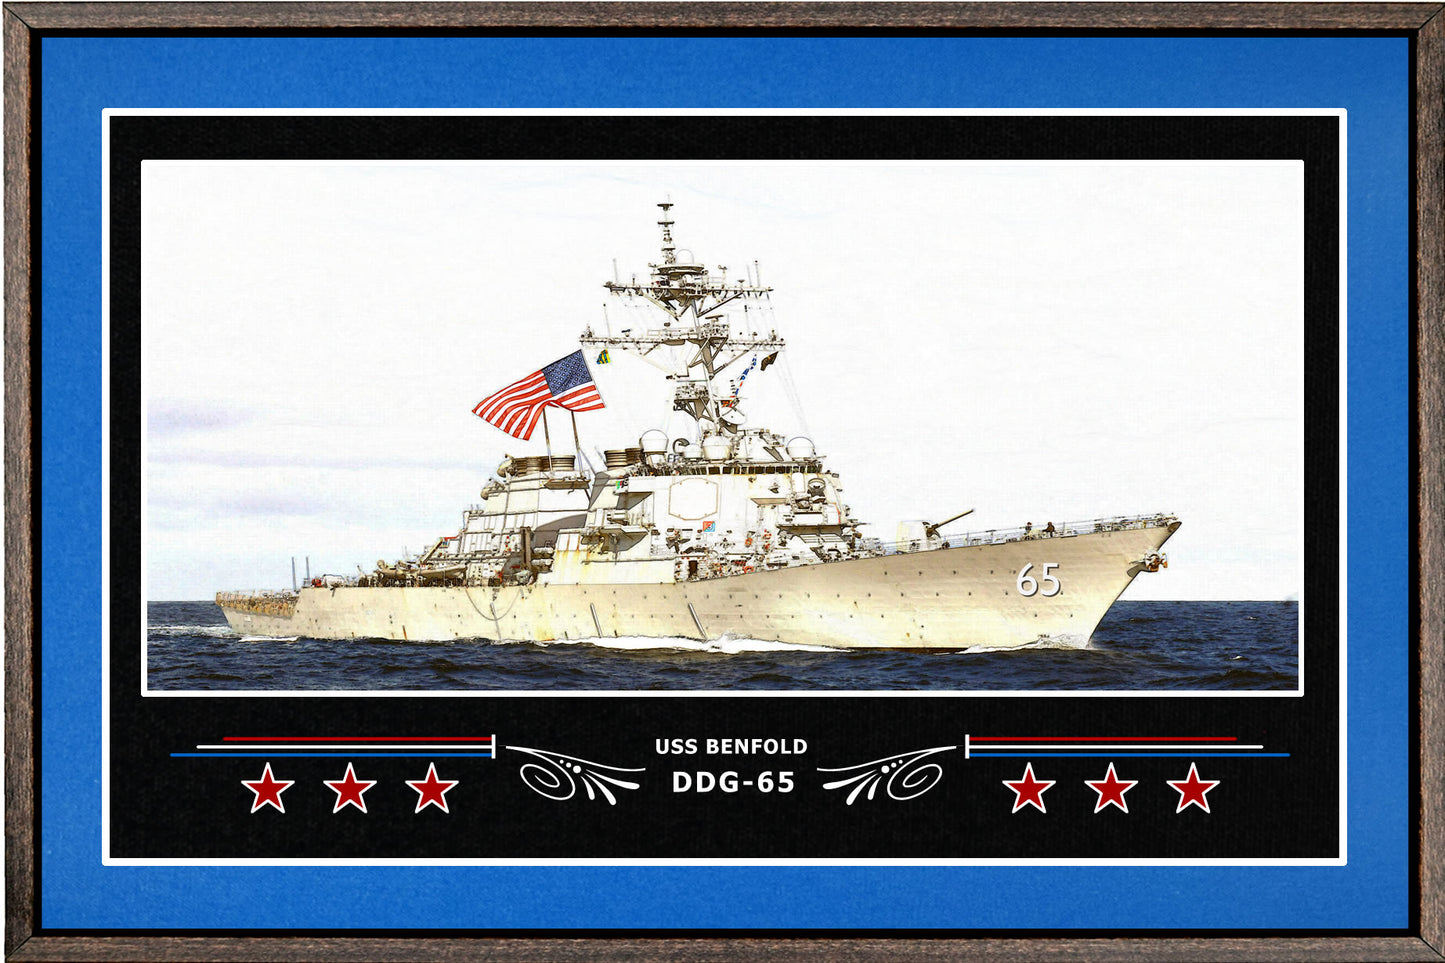 USS BENFOLD DDG 65 BOX FRAMED CANVAS ART BLUE